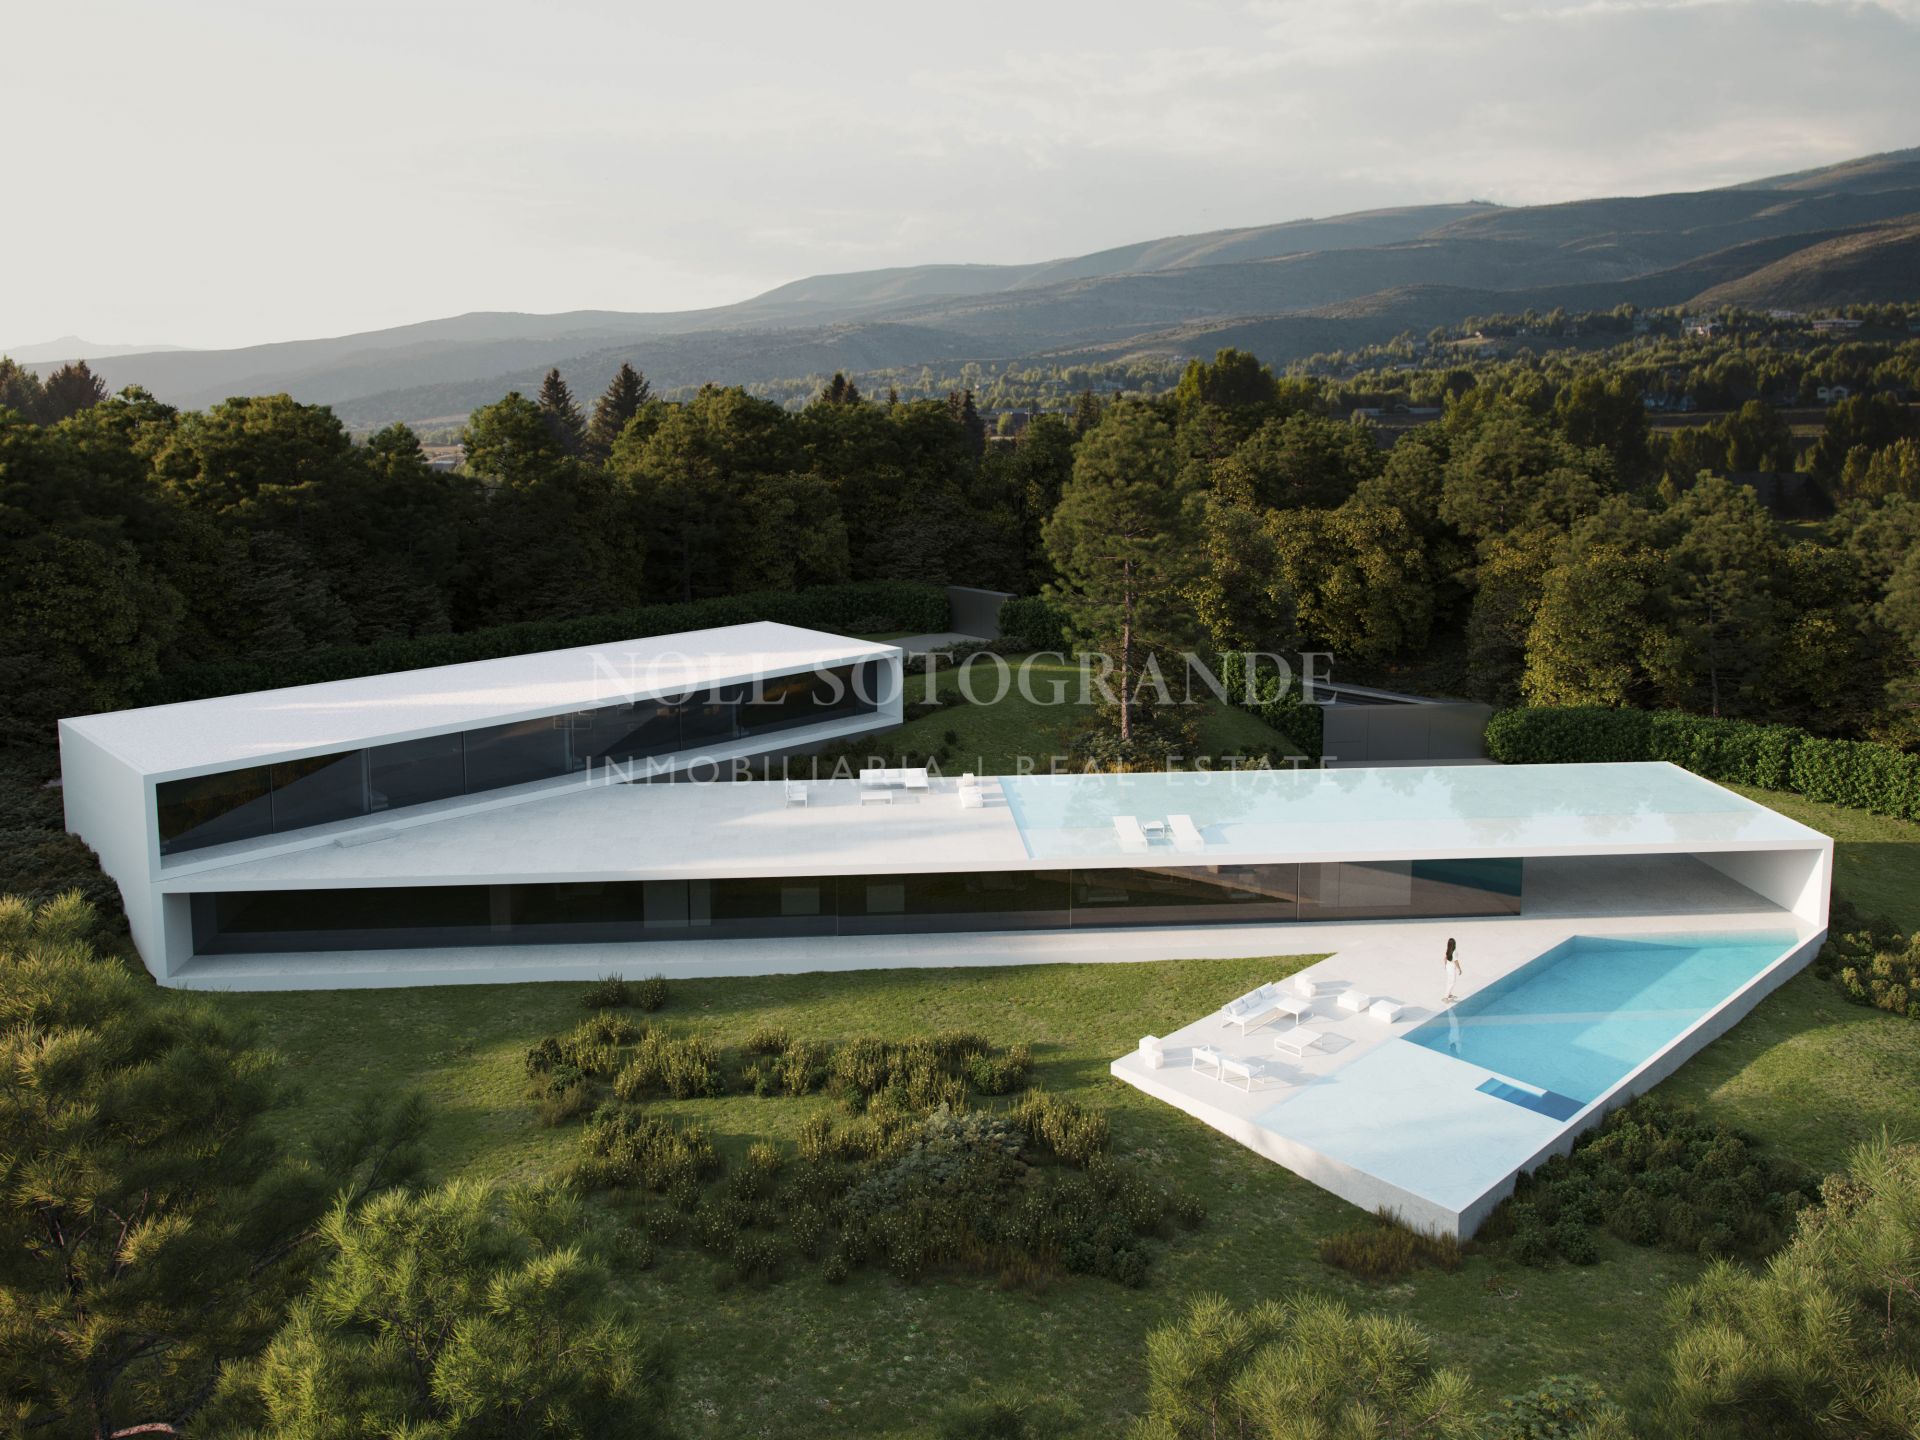 Neue zu bauende Villa Fran Silvestre in Sotogrande zu verkaufen